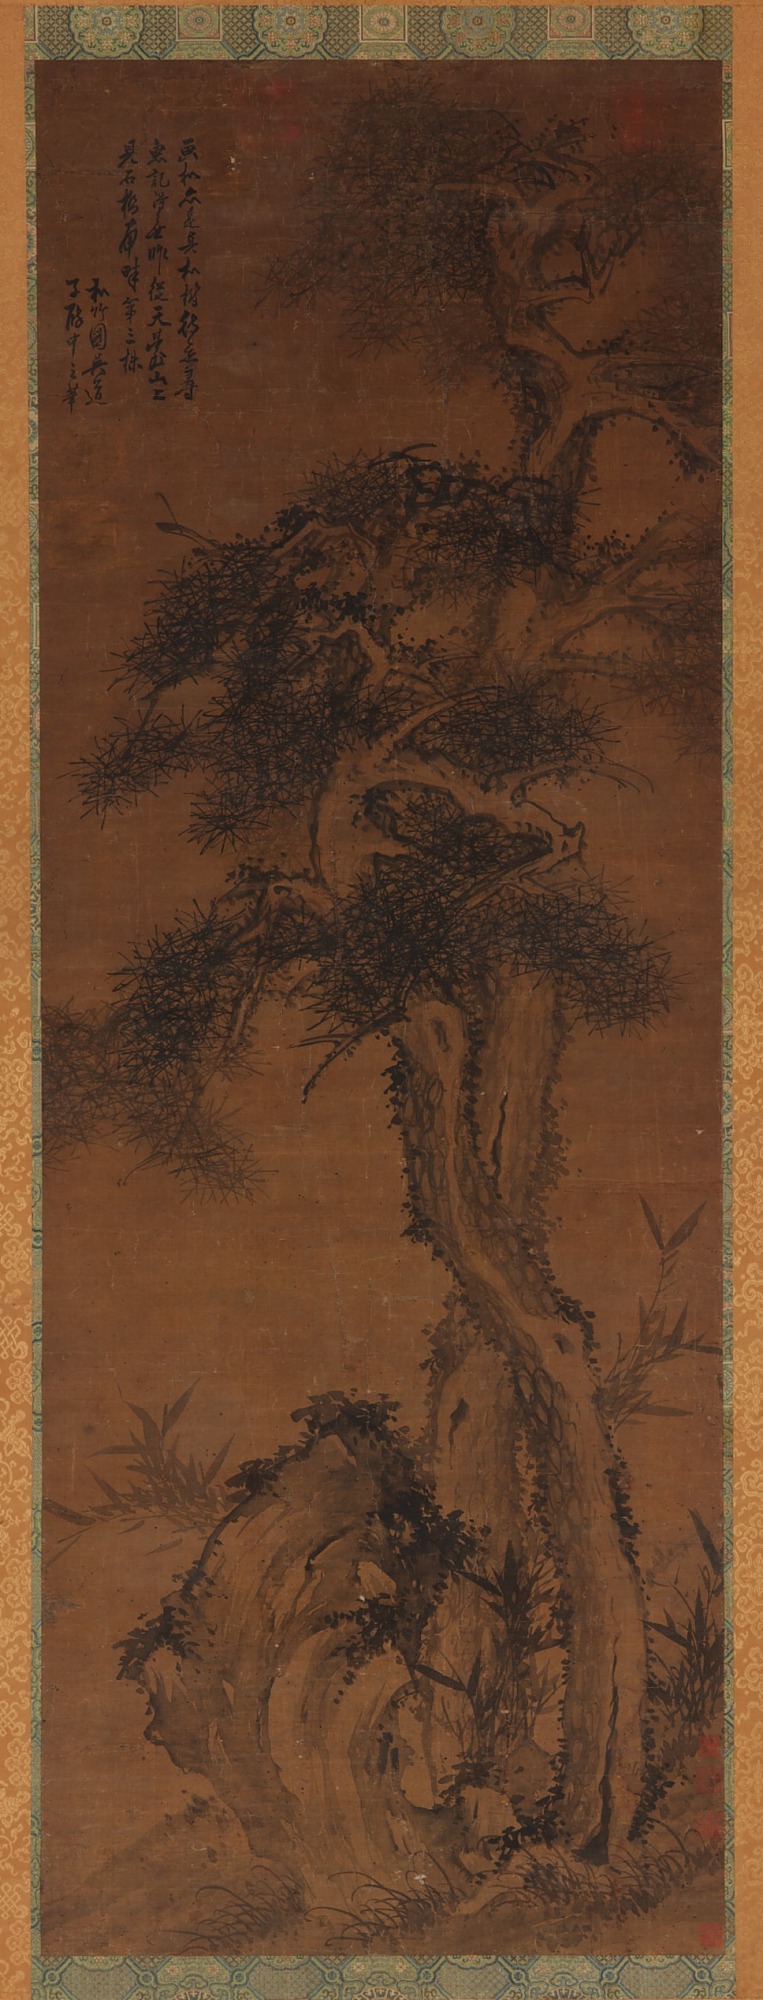 唐代画家吴道子作品-松树、岩石和竹子